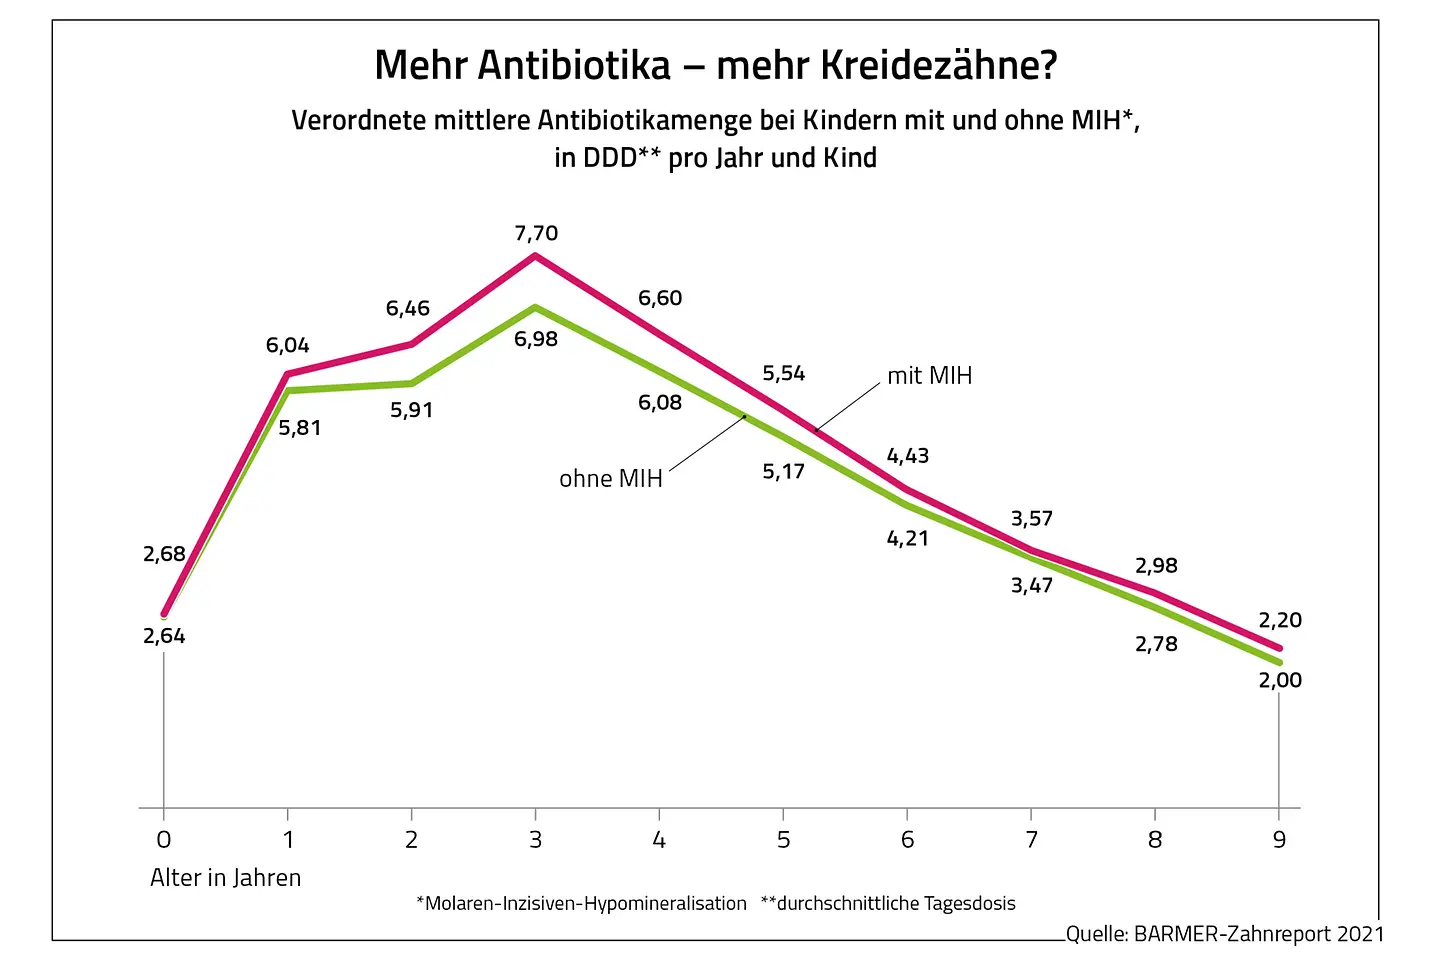 Die Grafik zeigt die verordnete Antibiotikamenge bei Kindern mit und ohne MIH.